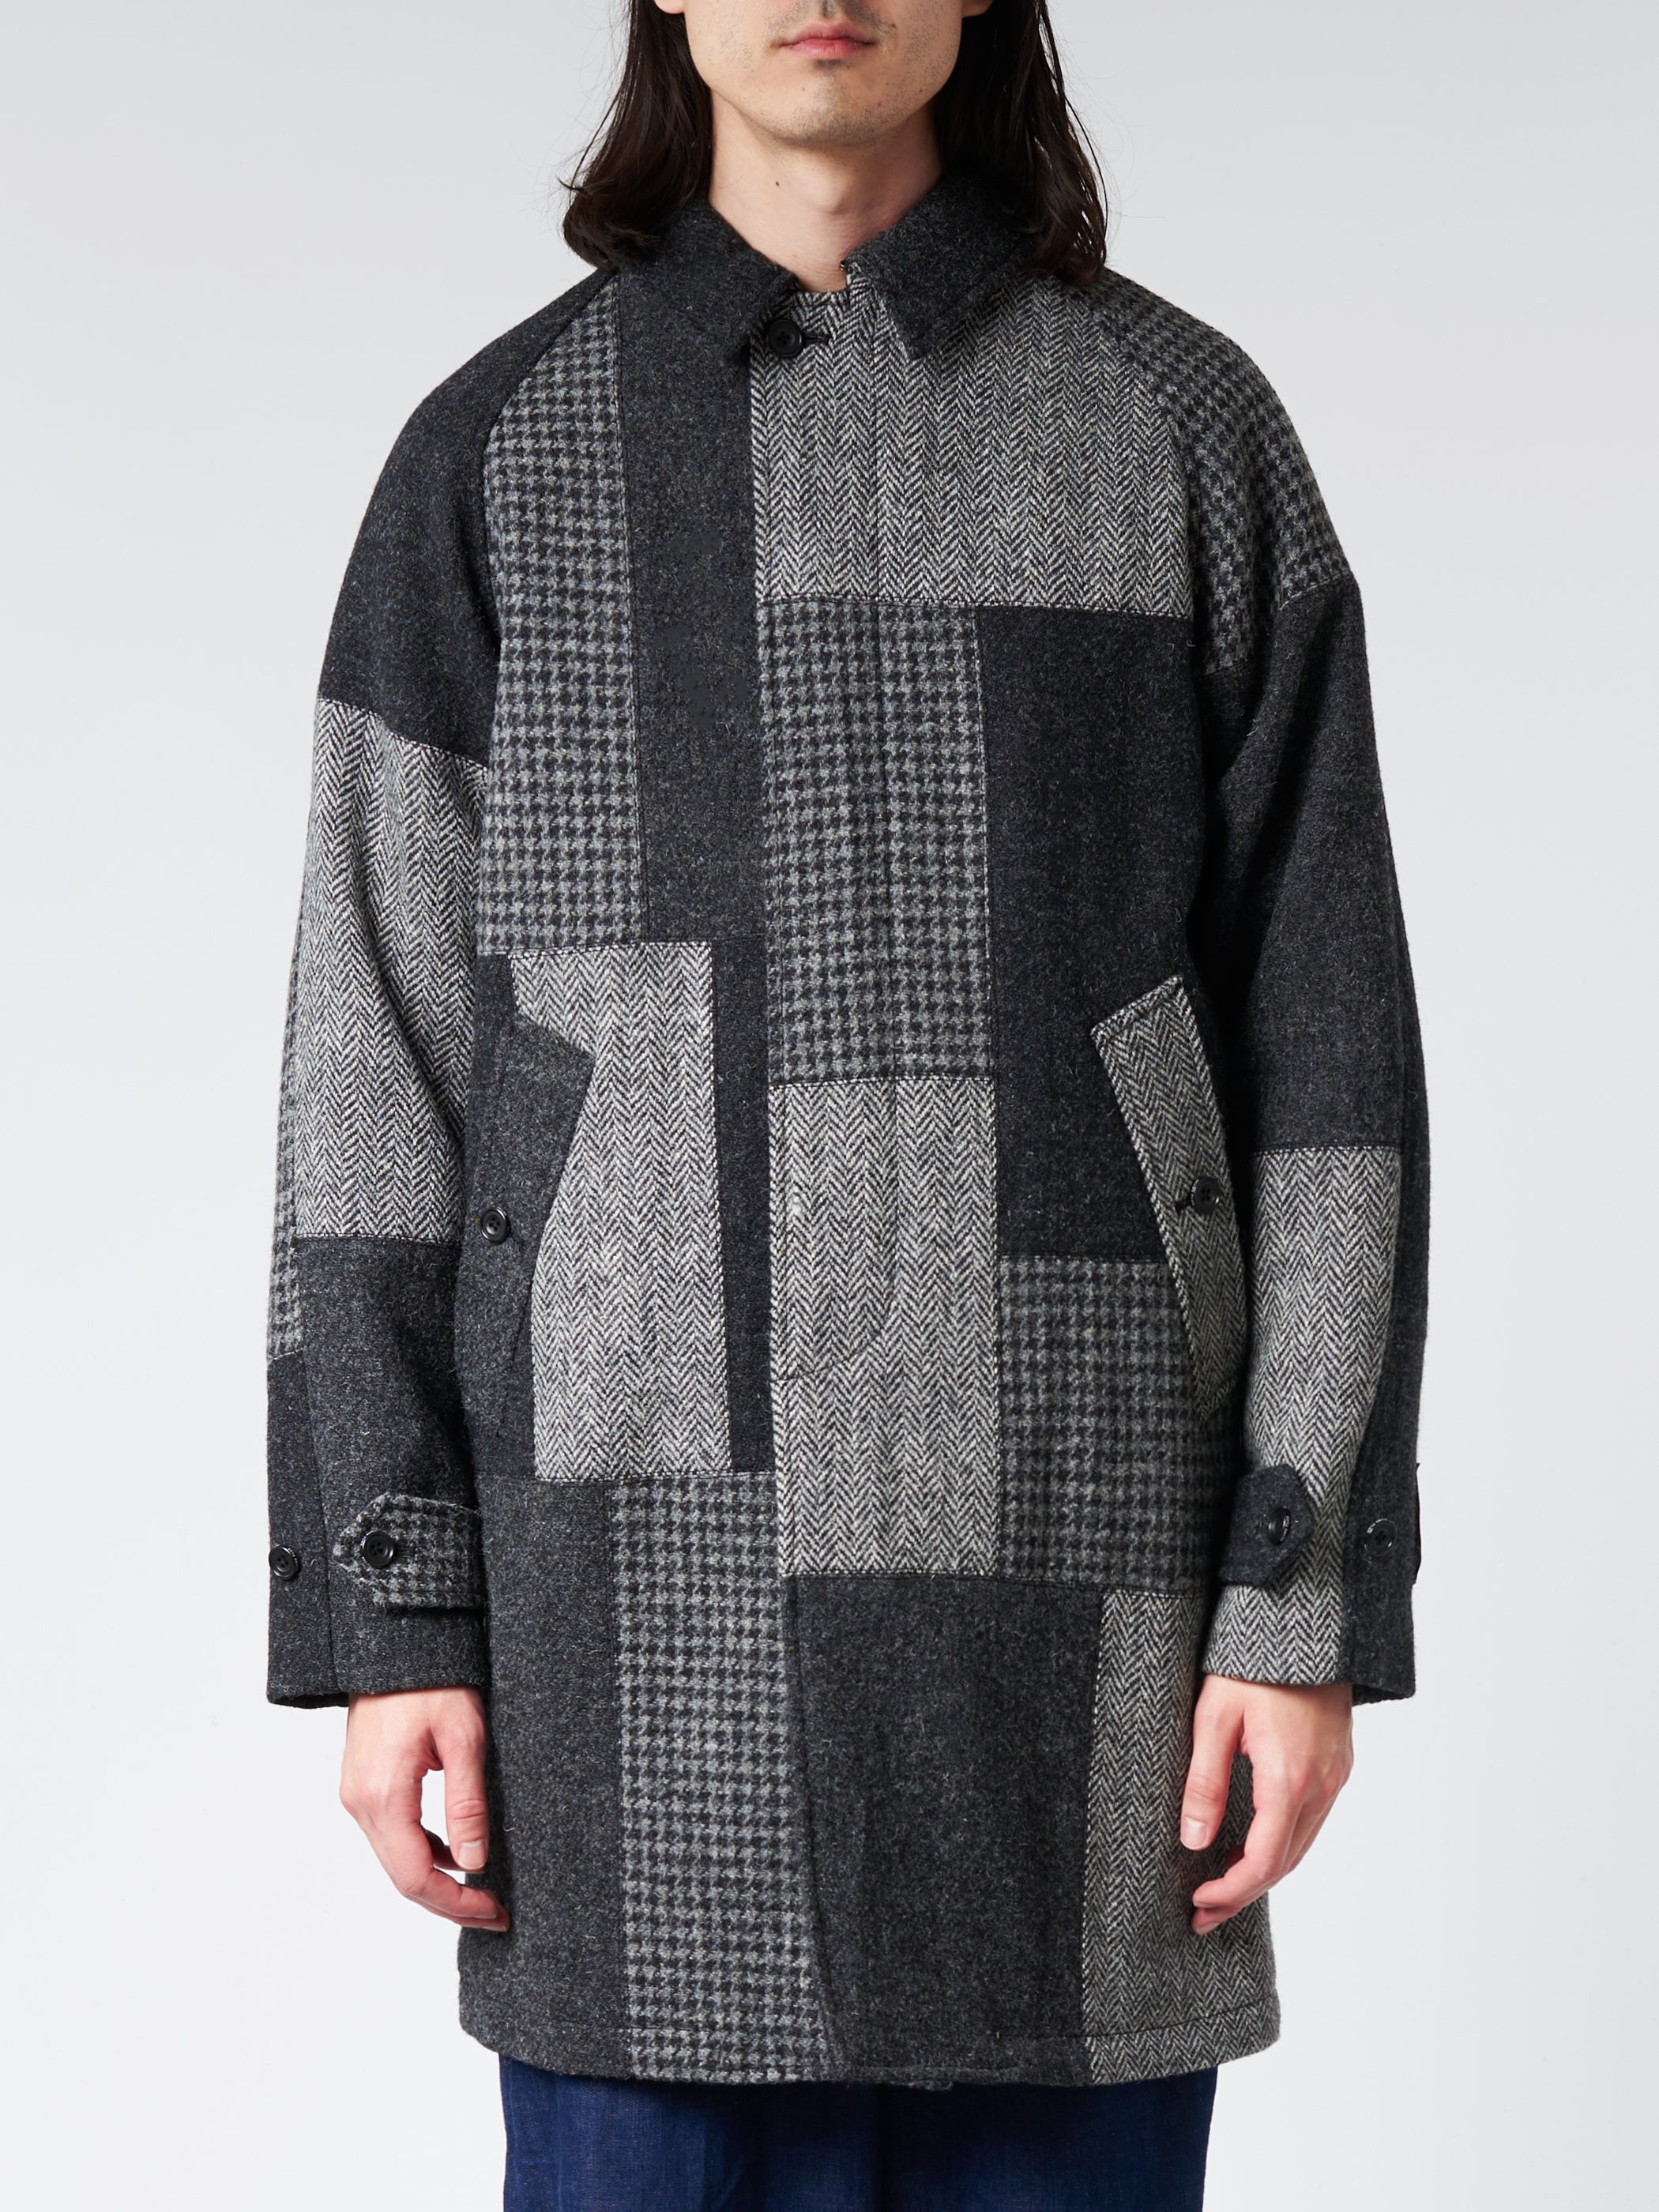 Patchwork Harris Tweed Balmacaan Coat